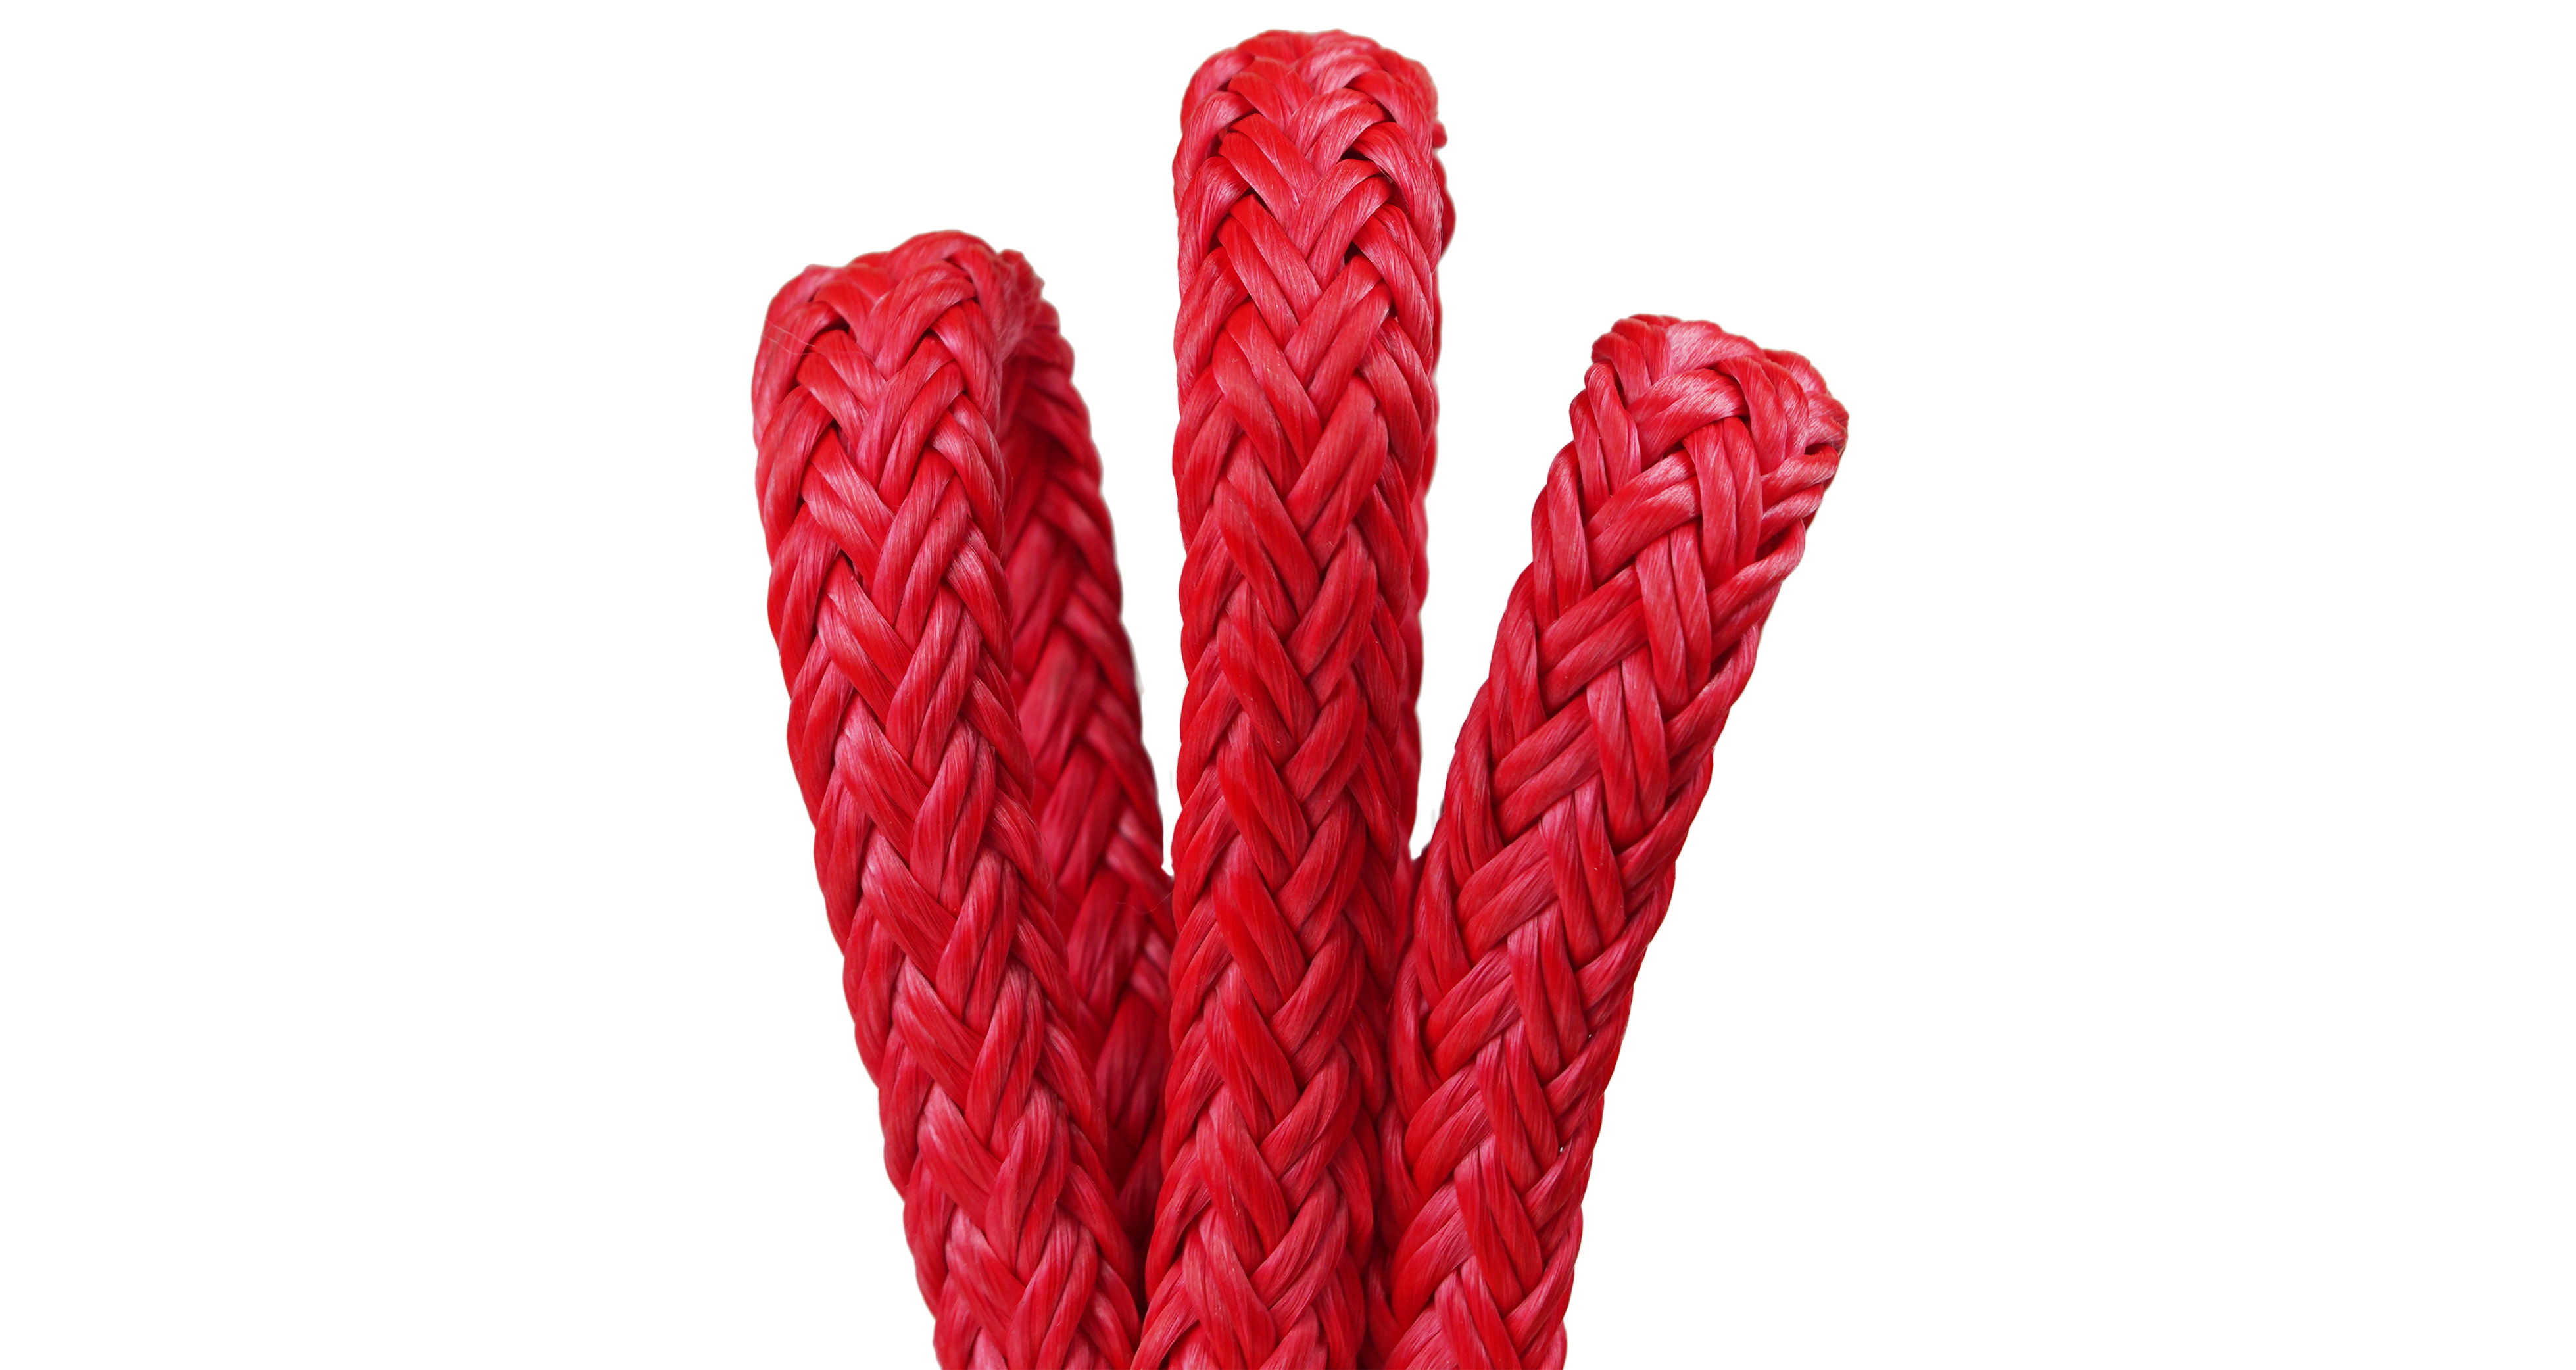 Linea di strumenti per rigging a treccia cava, 12 fili in poliestere, 600 piedi. Lunghezza, rosso